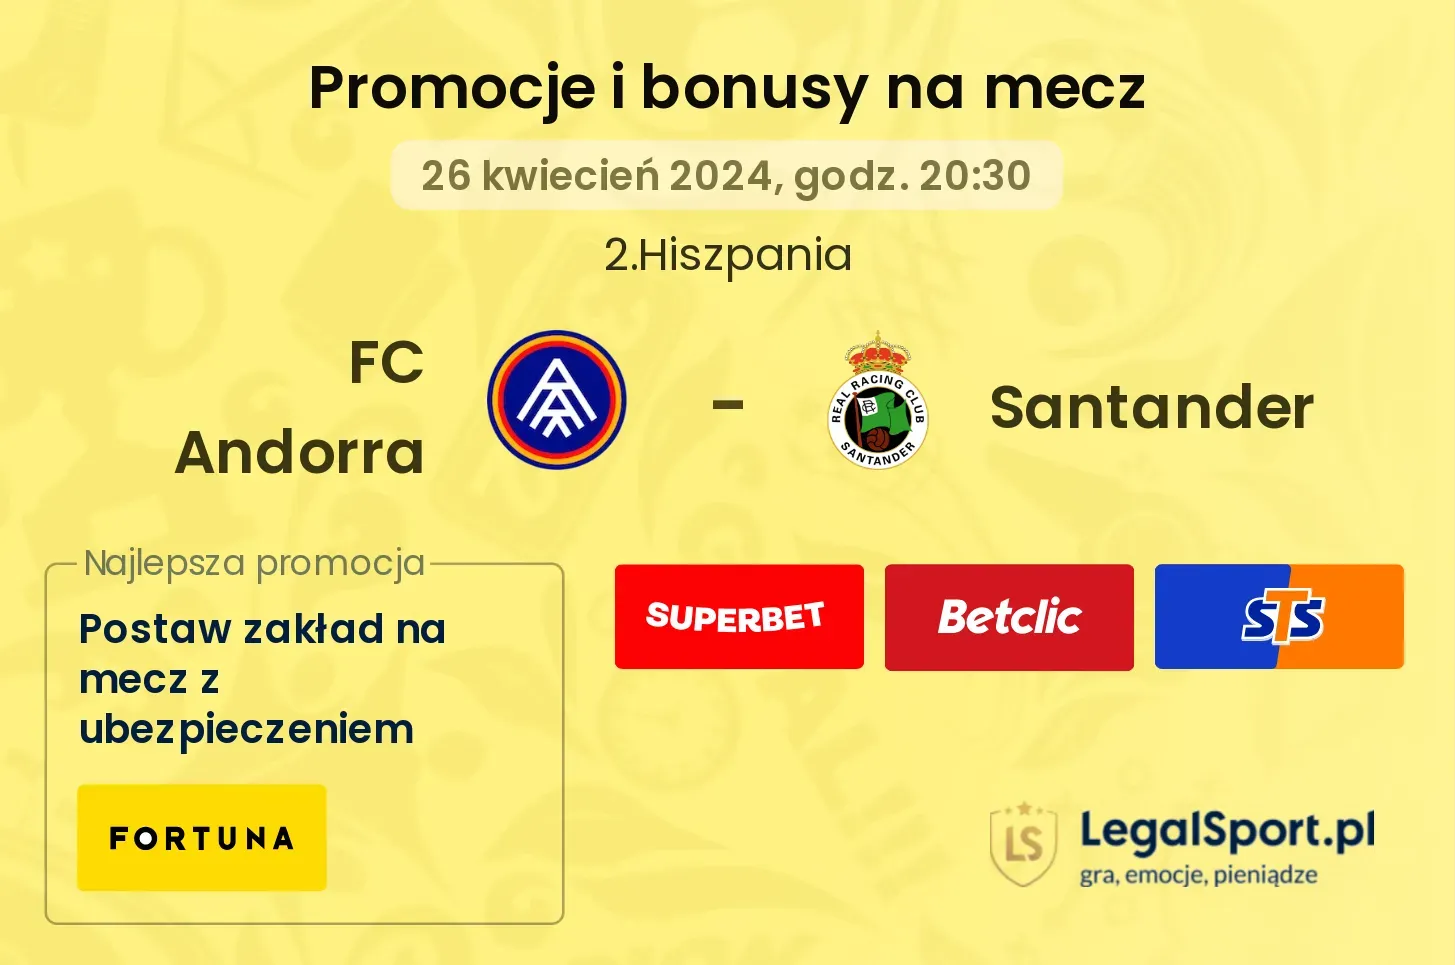 FC Andorra - Santander promocje bonusy na mecz